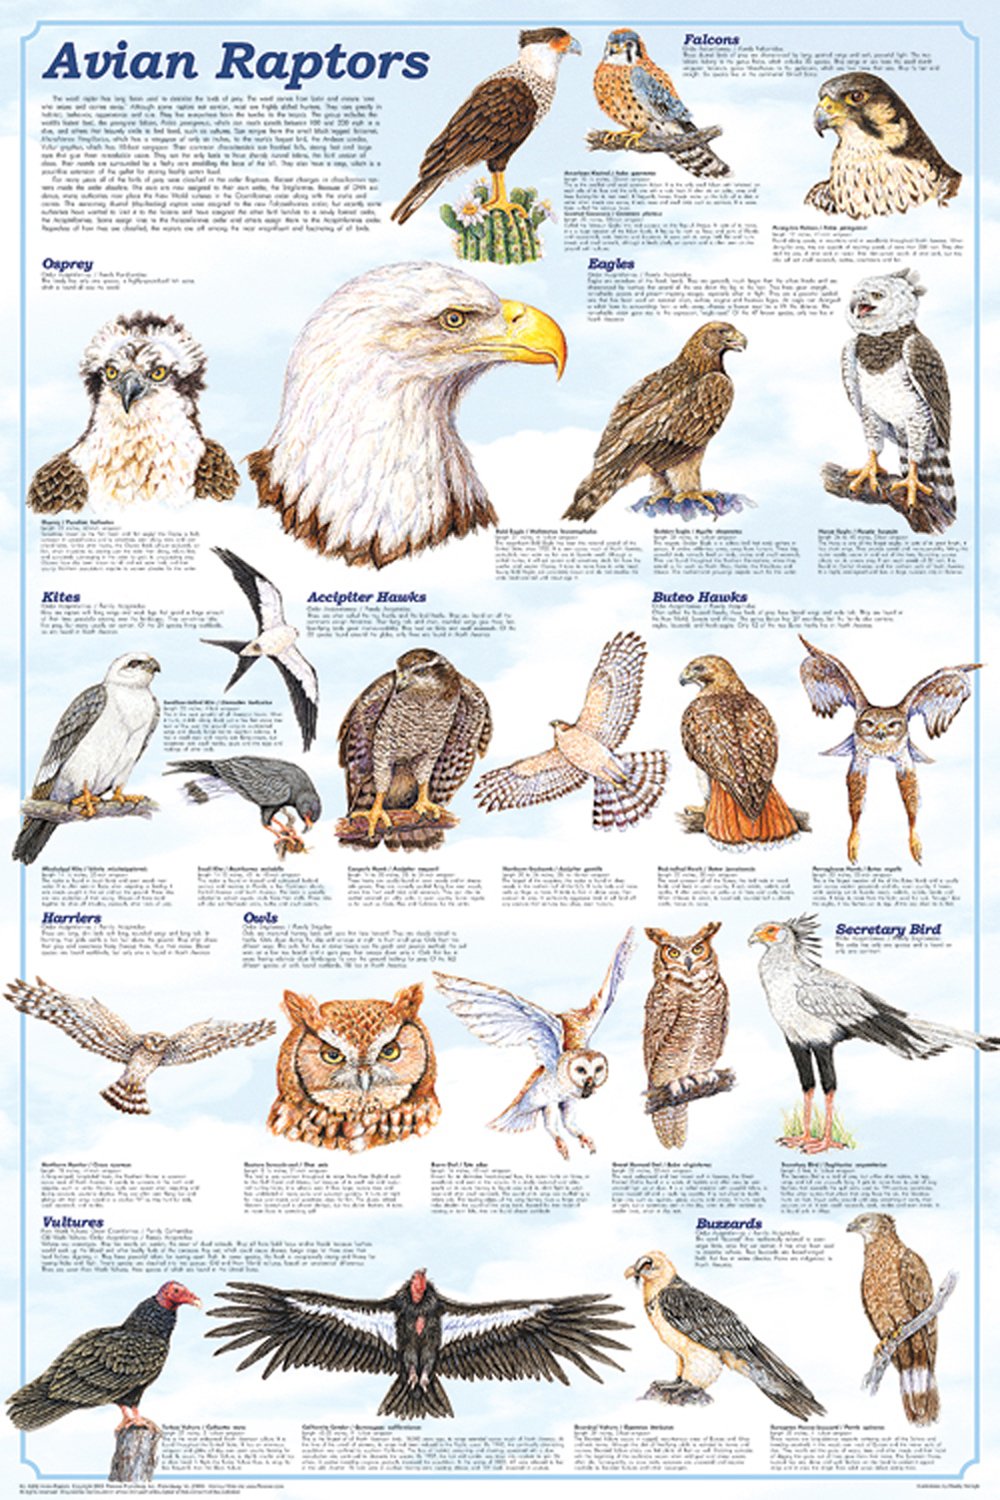 Avian Raptors (Laminated Poster)